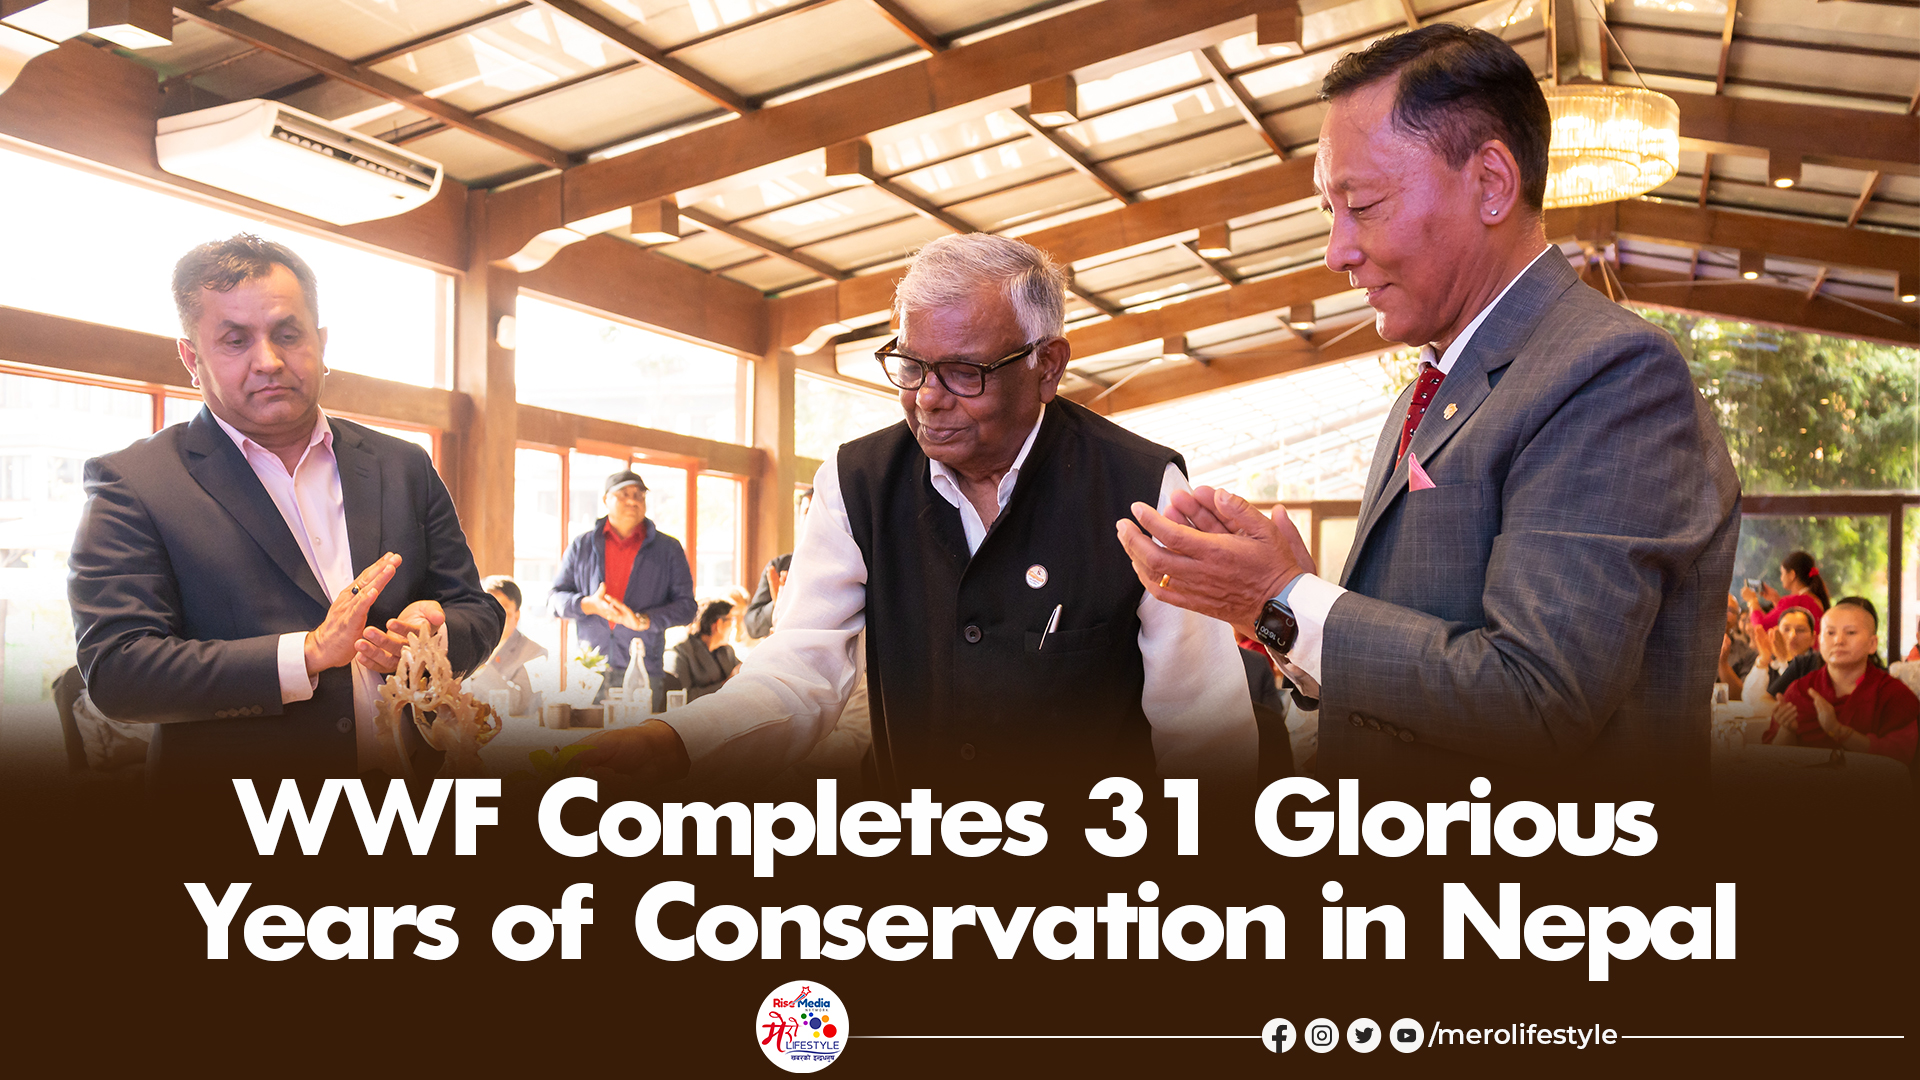 WWF Nepal turns 31